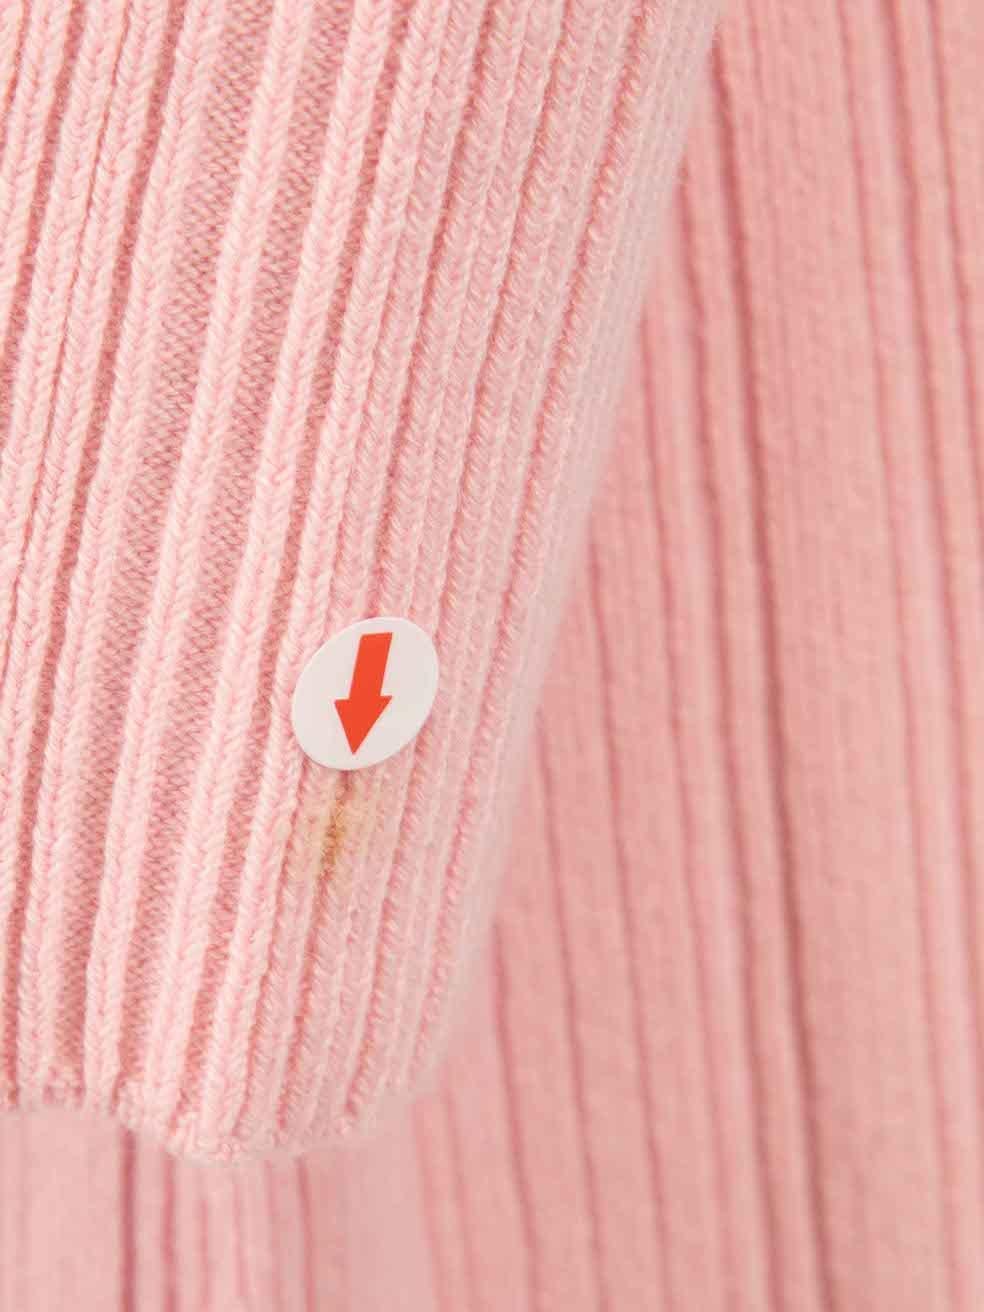 ANNA QUAN Pink Rib Knit Midi Dress Size XL For Sale 1